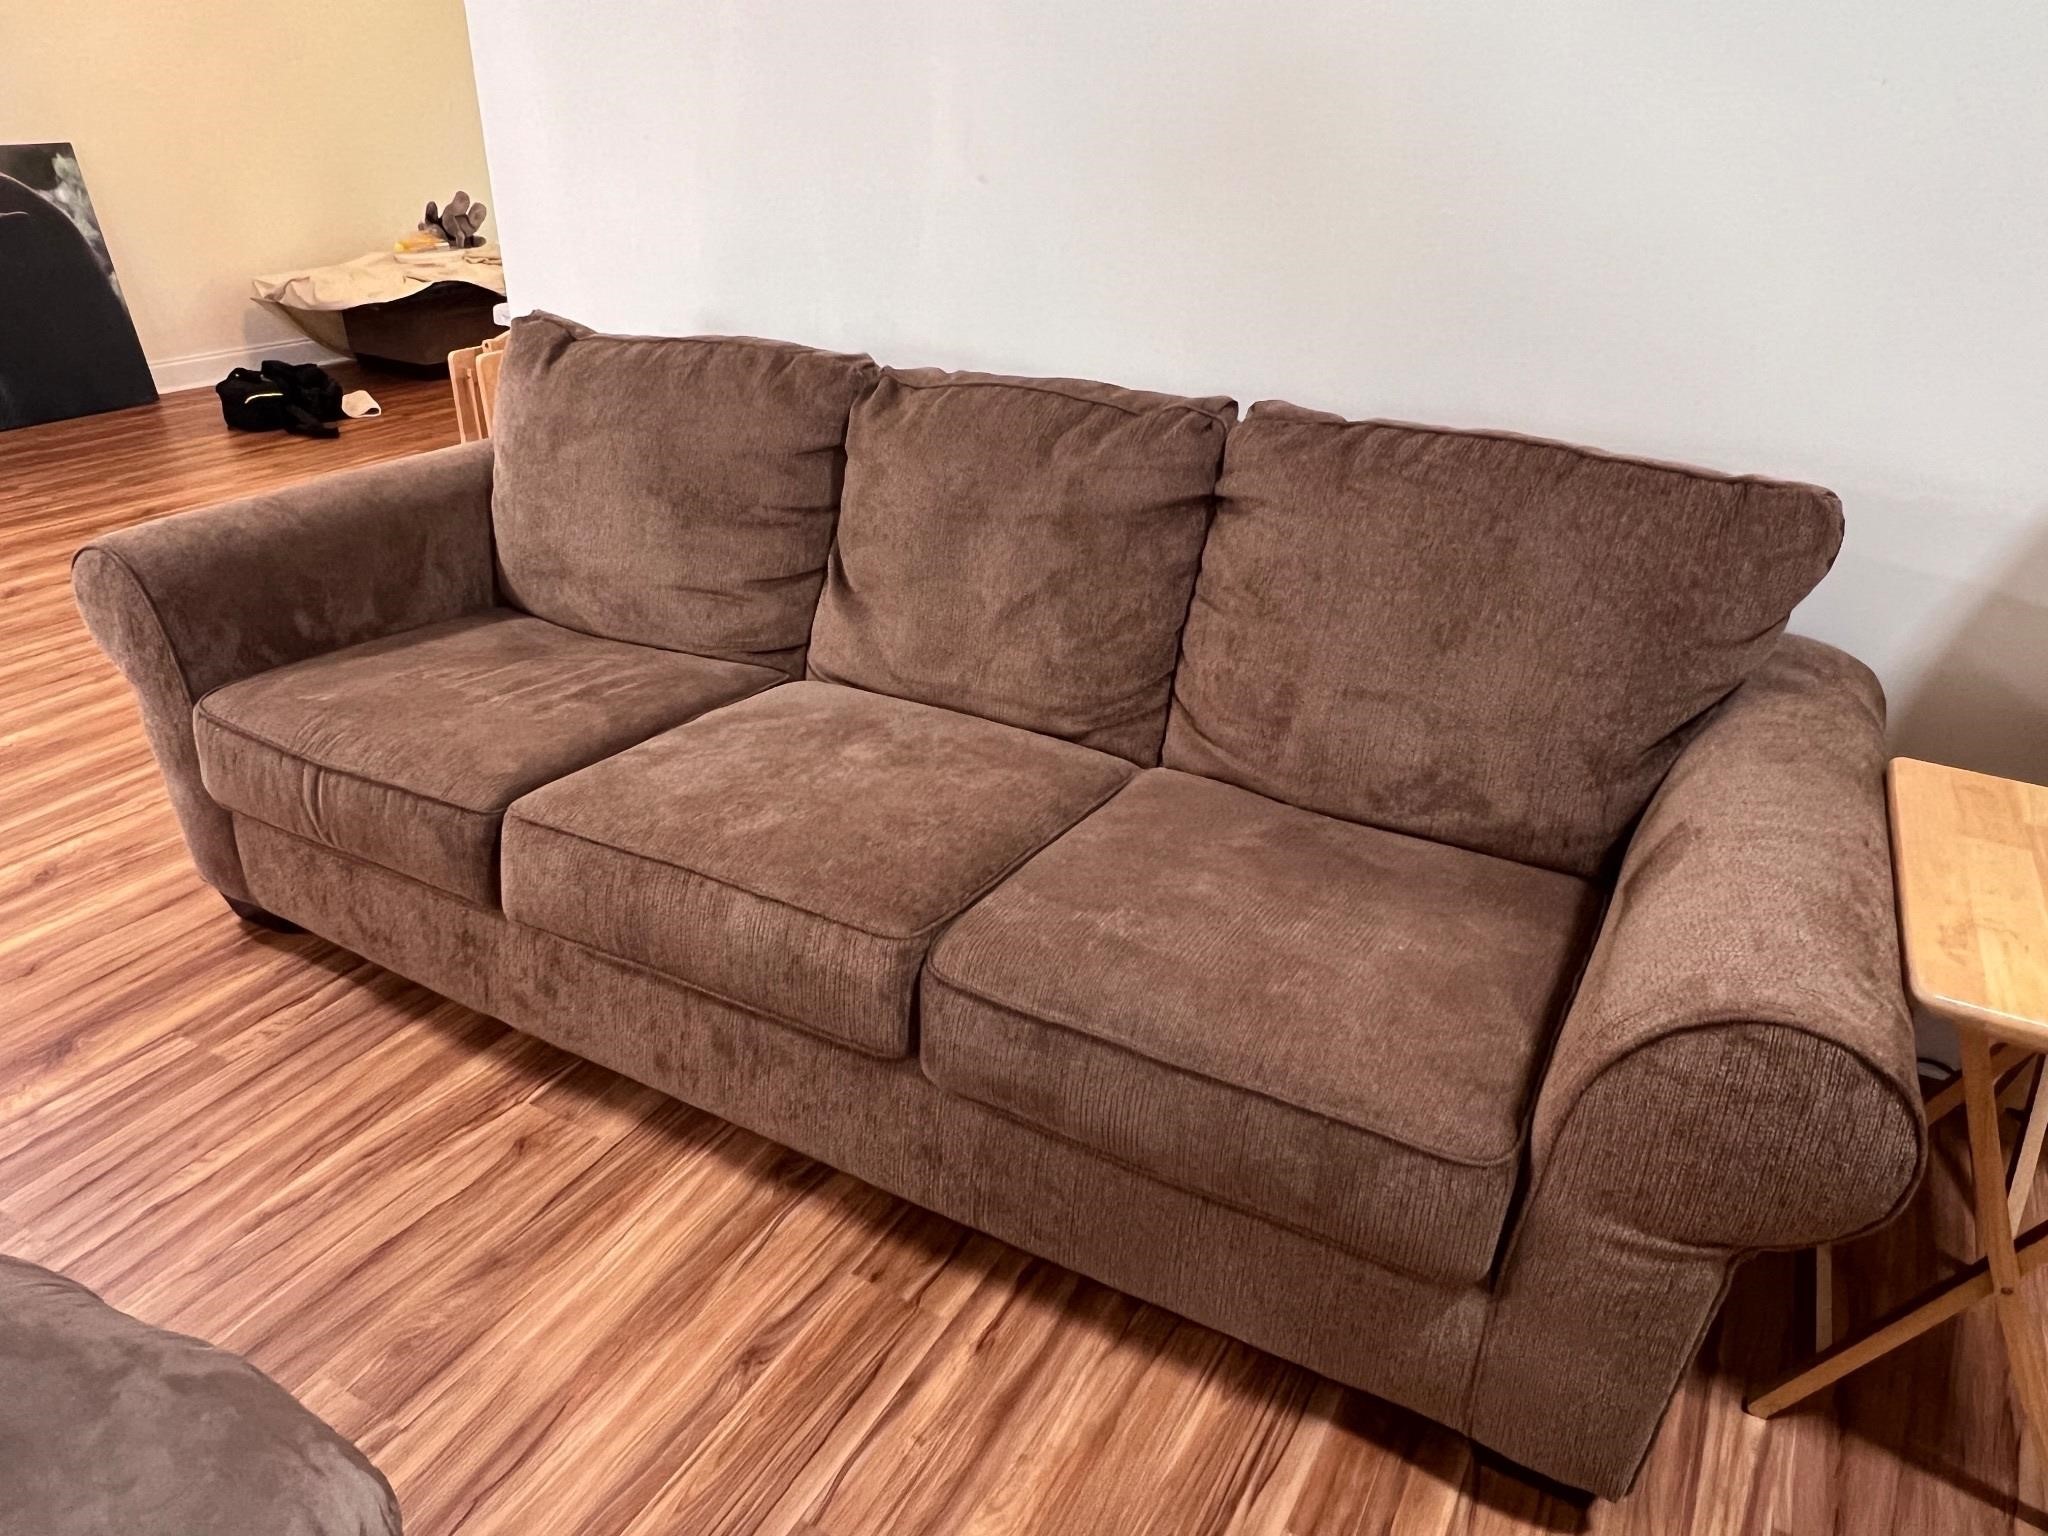 Ashley furniture sofa